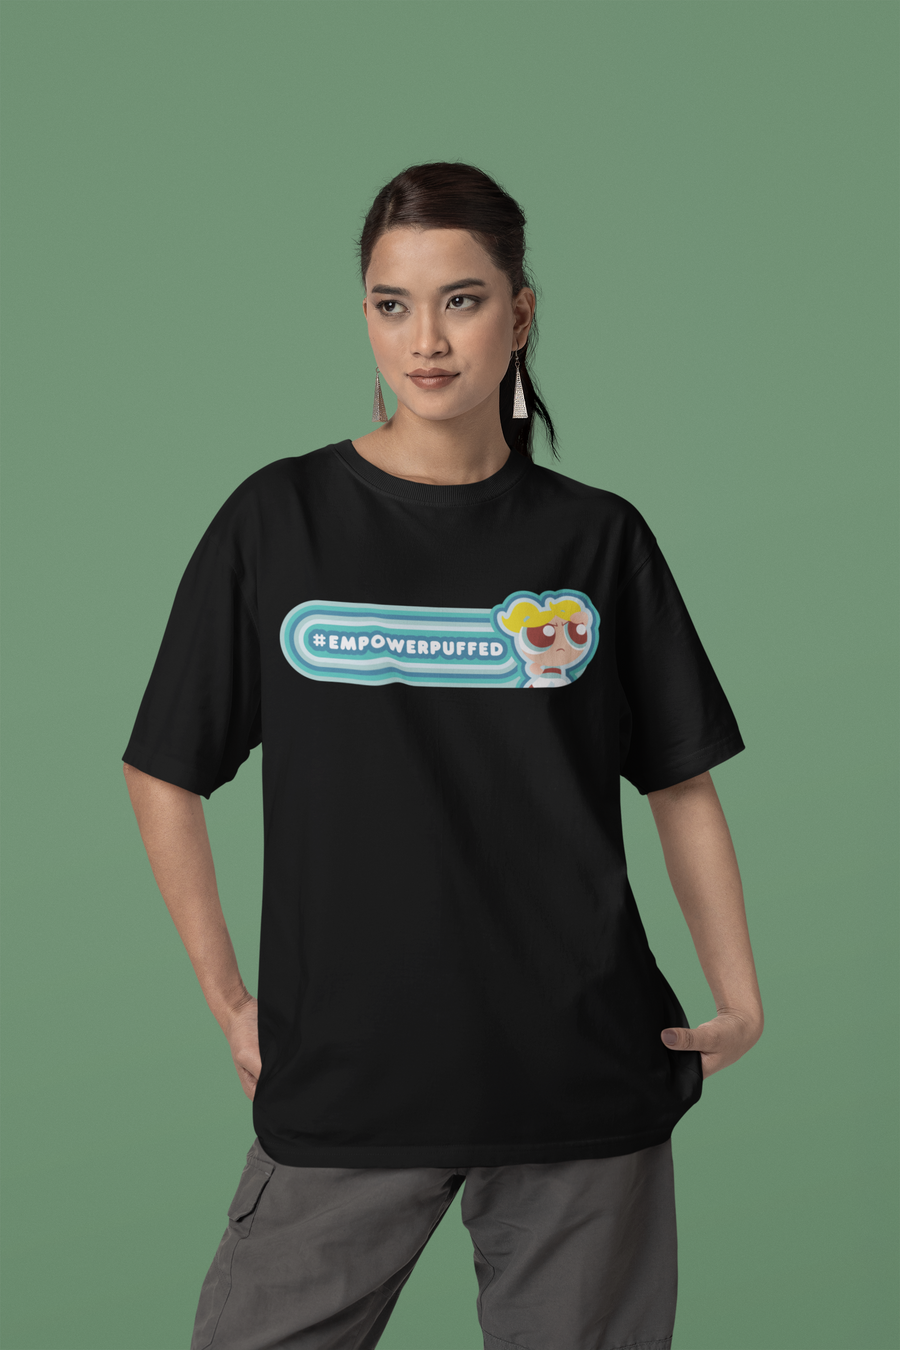 Official Empowerpuffed Oversized T-Shirt